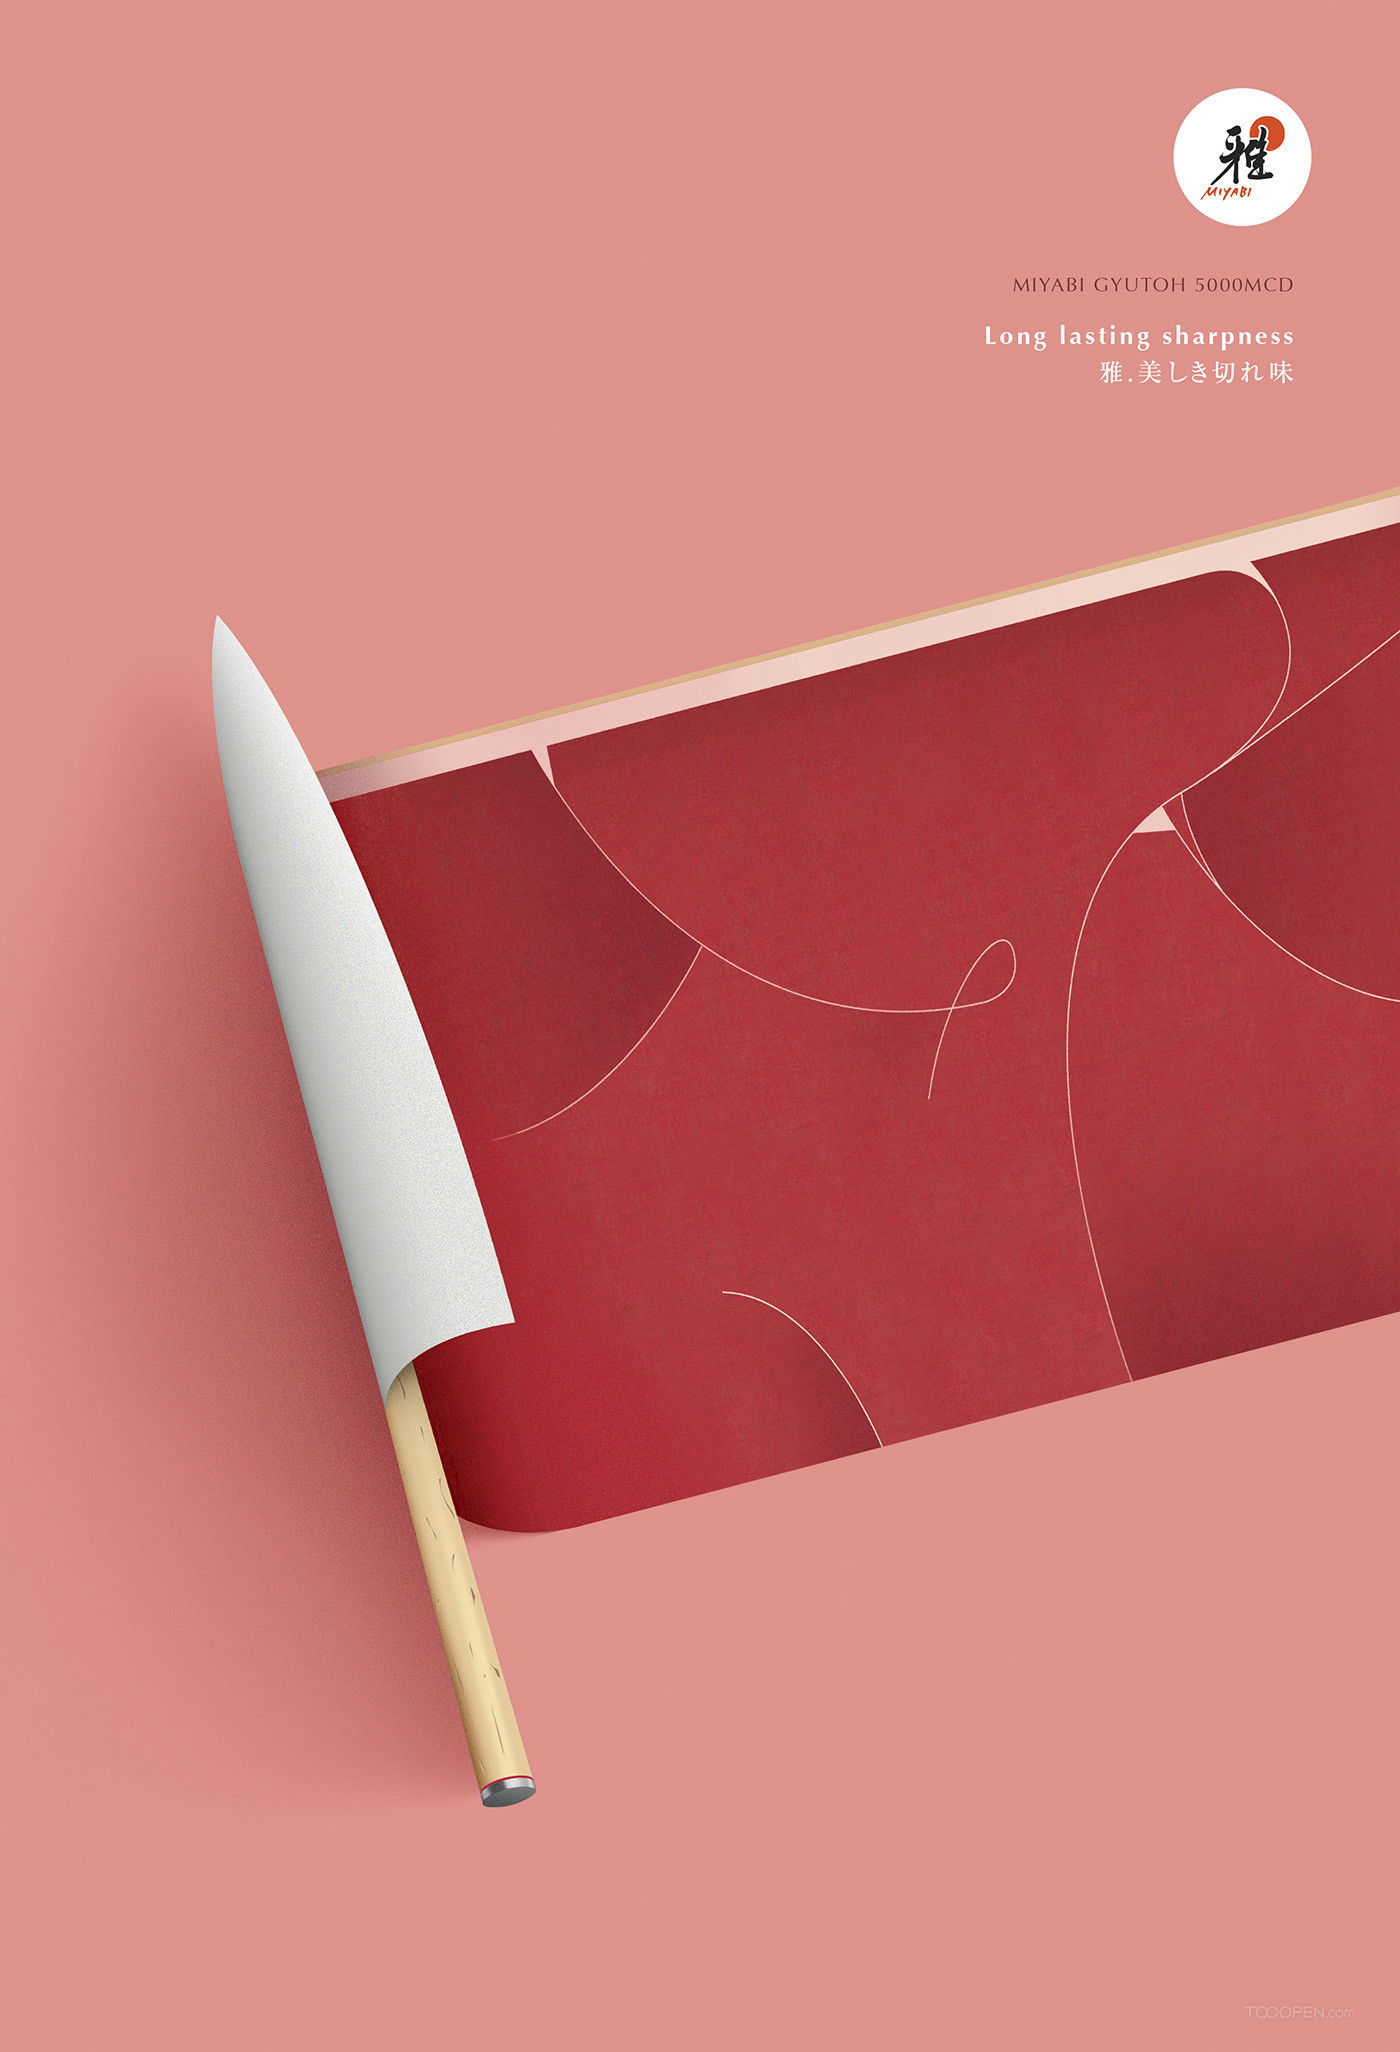 日本刀具创意广告海报设计欣赏-03